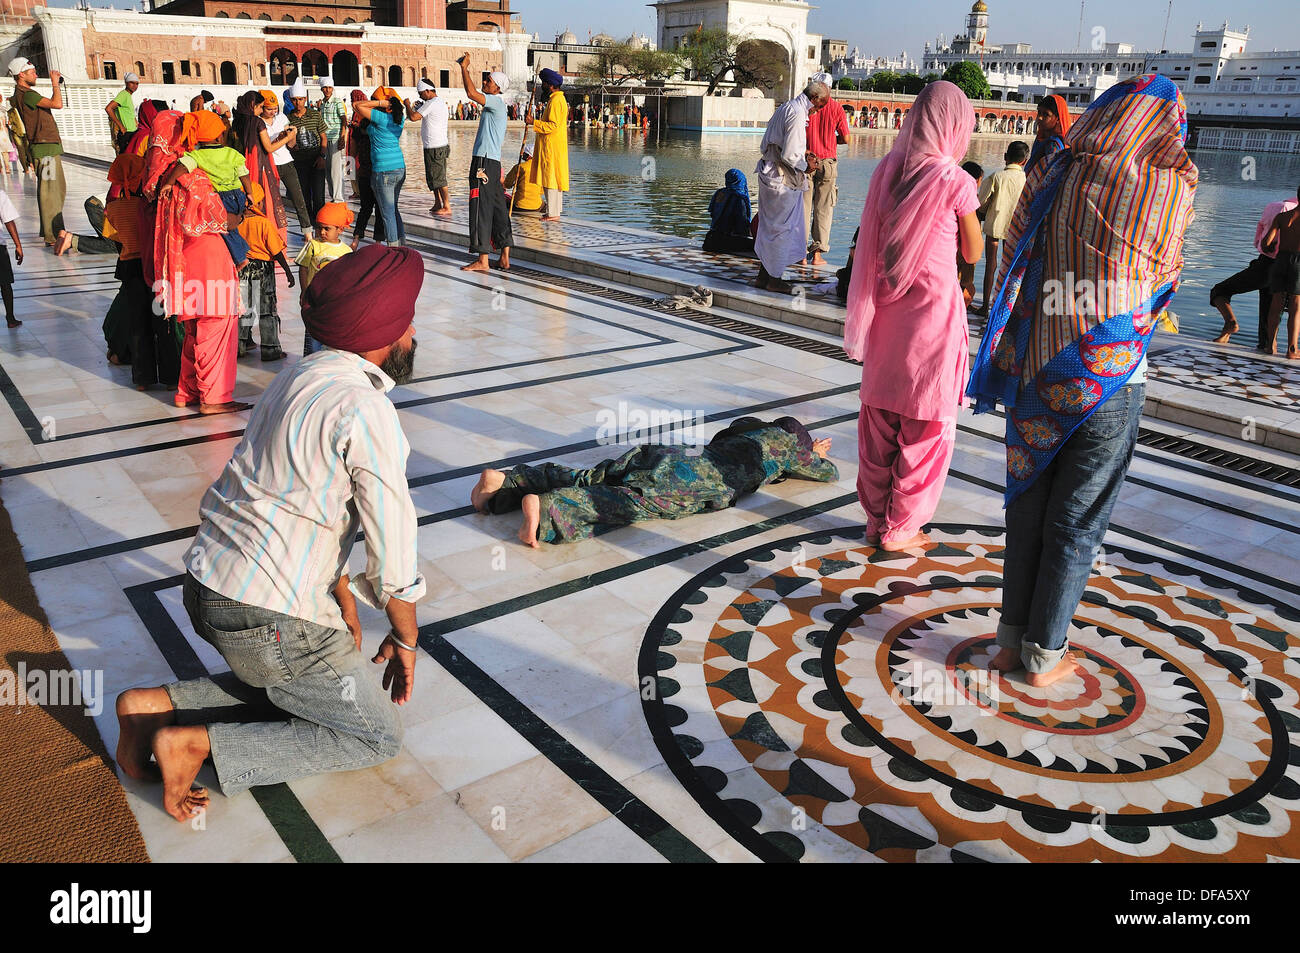 Sikh pilgrims praying for the God in Golden Temple Stock Photo